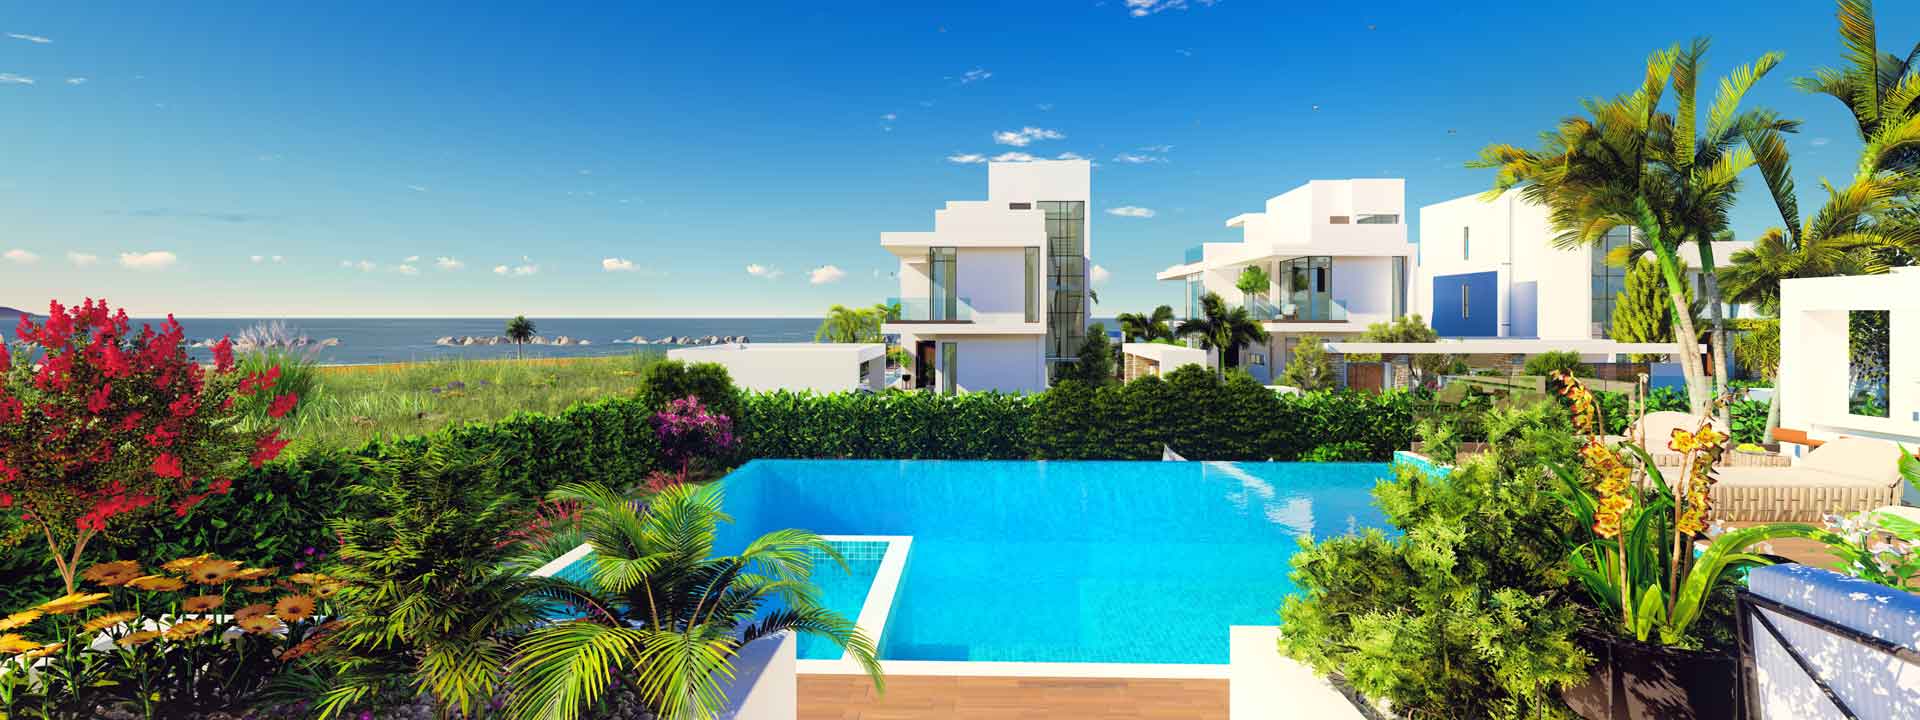 Calma Beachfront Villas – Villa No. 5